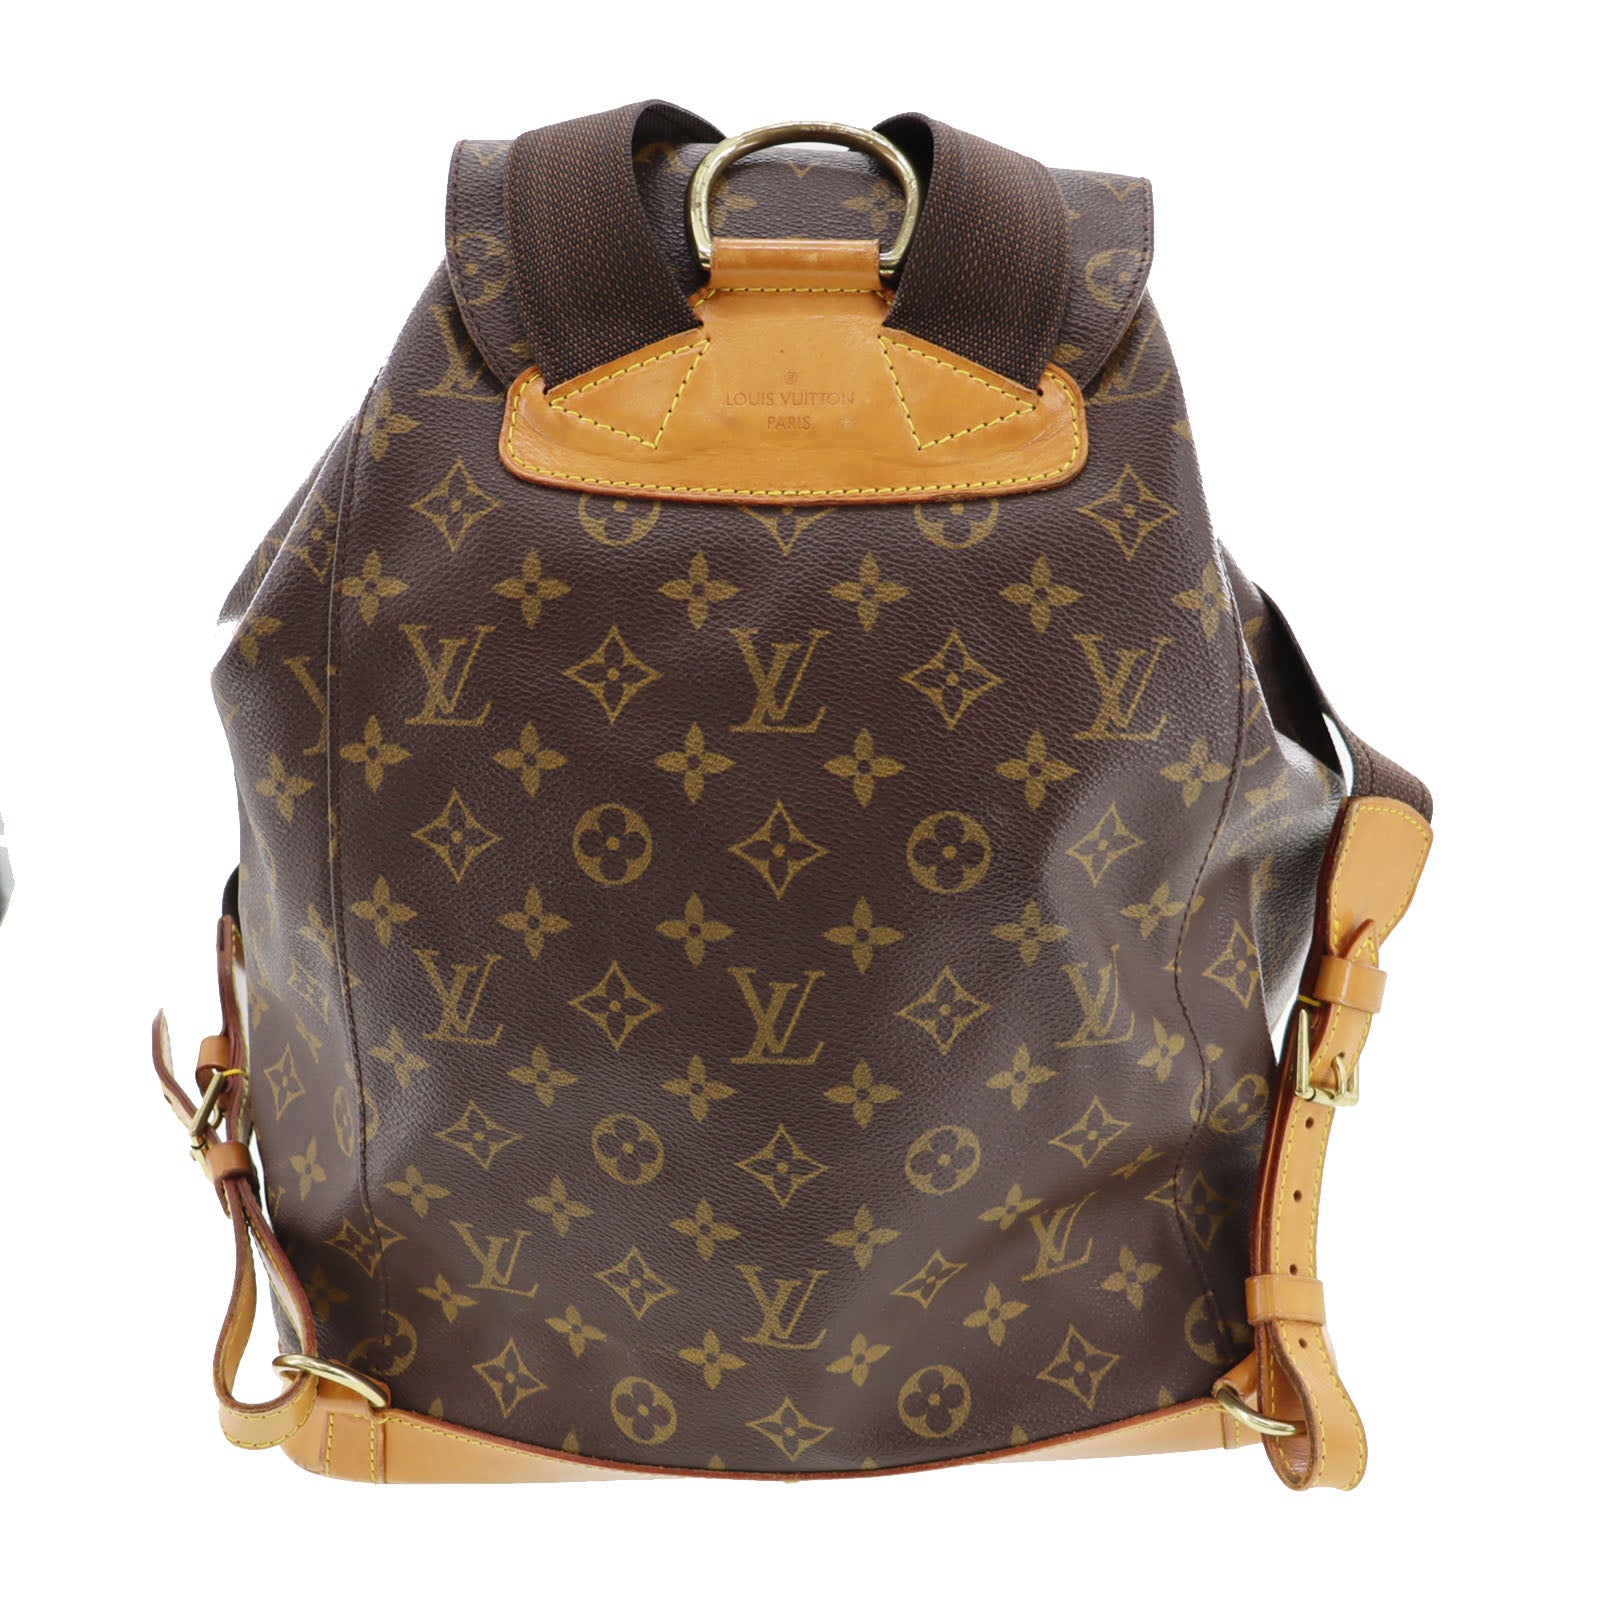 Lv Montsouris Vs Chanel Vintage Backpack